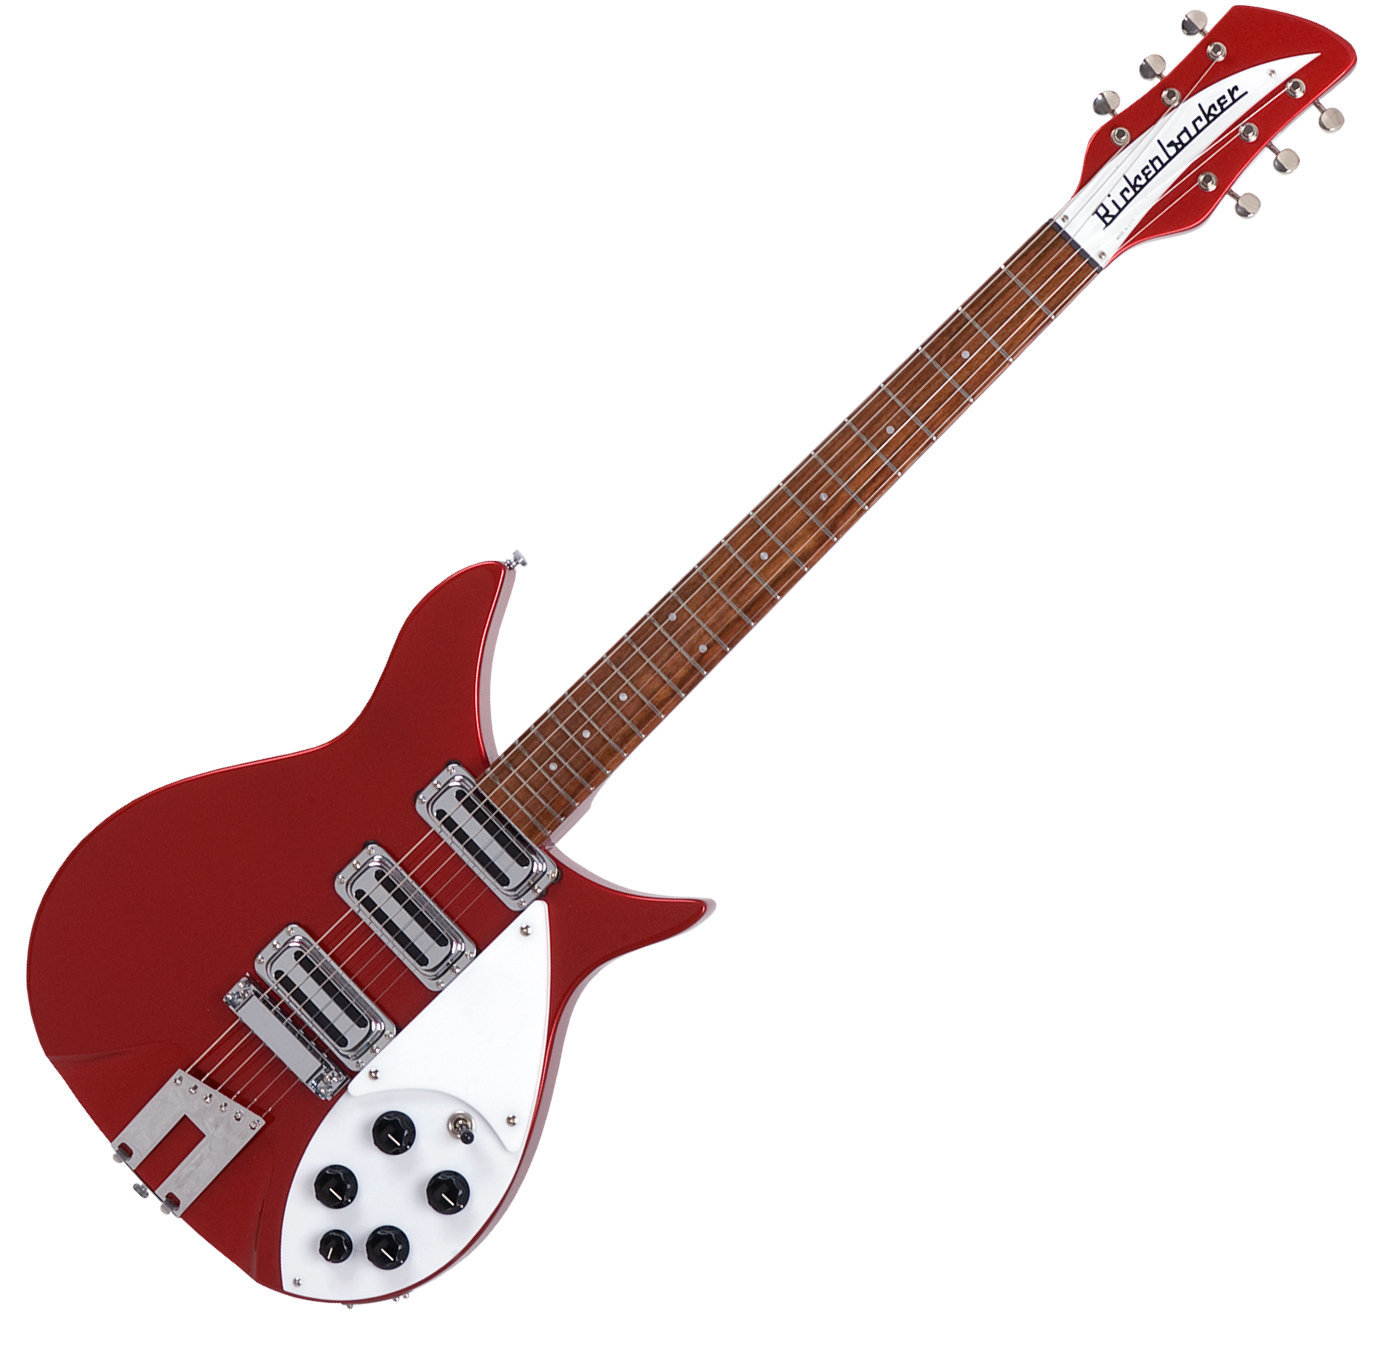 Halvakustisk gitarr Rickenbacker 350V63 Liverpool Ruby